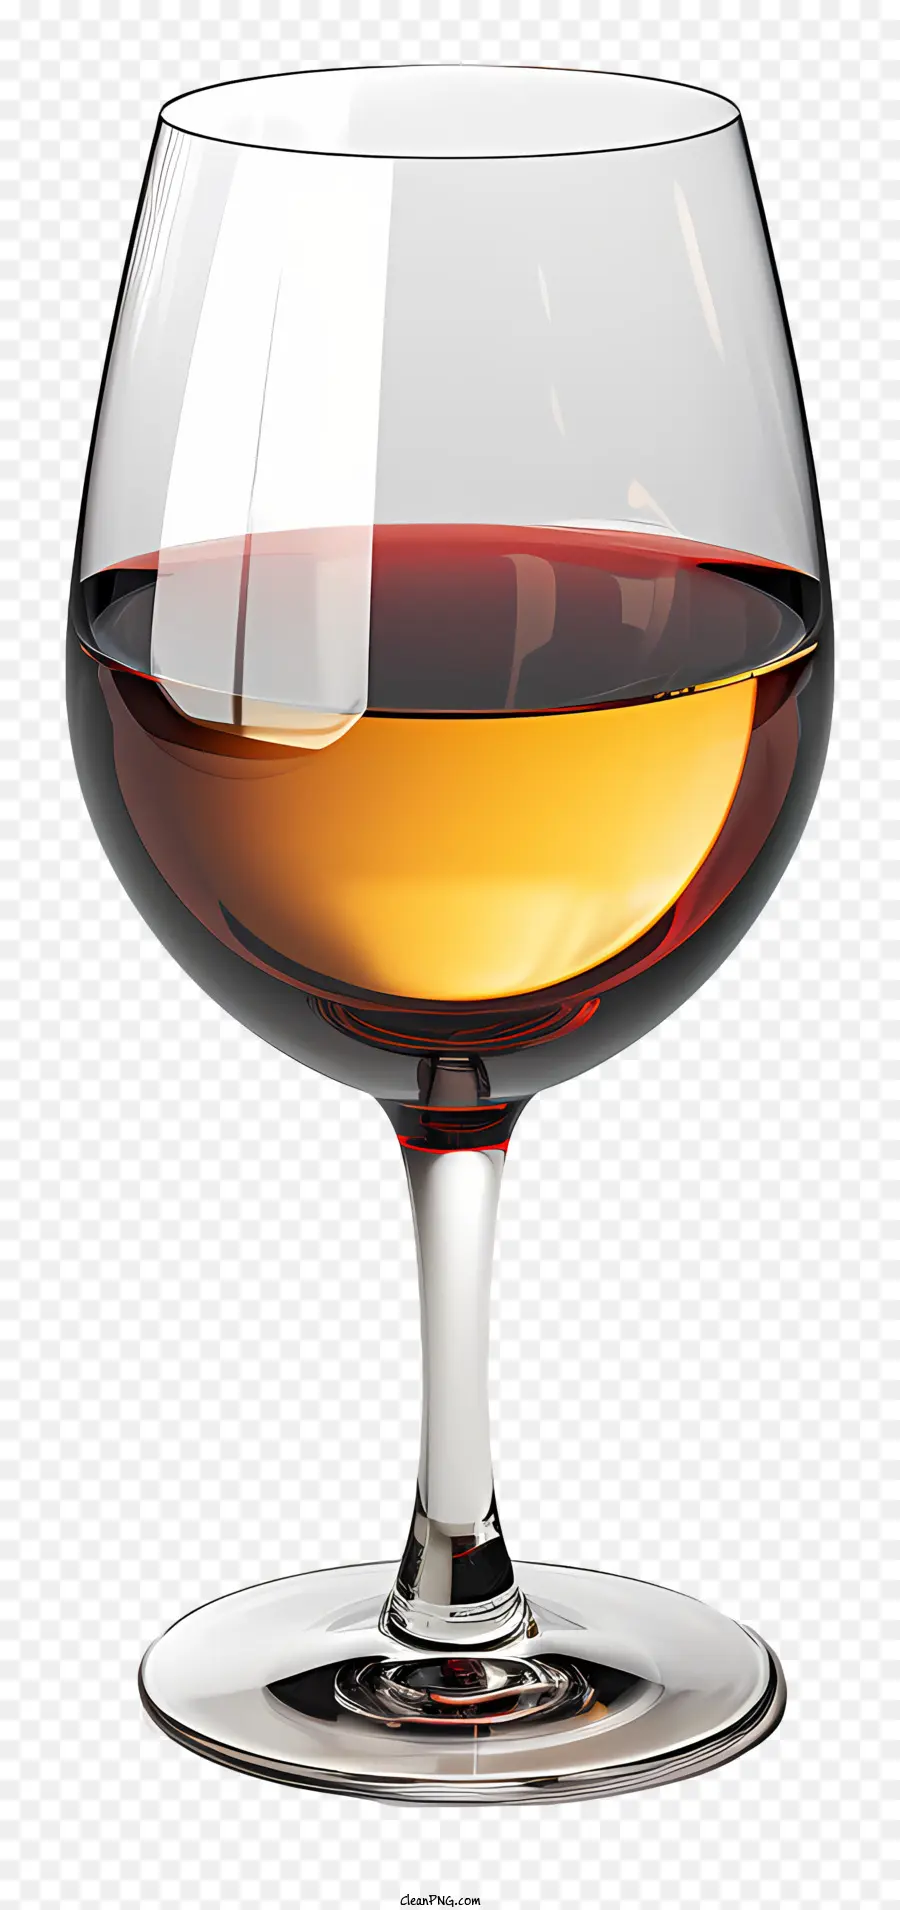 vetro alcolico color ambra di alcool saporite complesso gust vetro - Alcool ambra in vetro con sapore miele